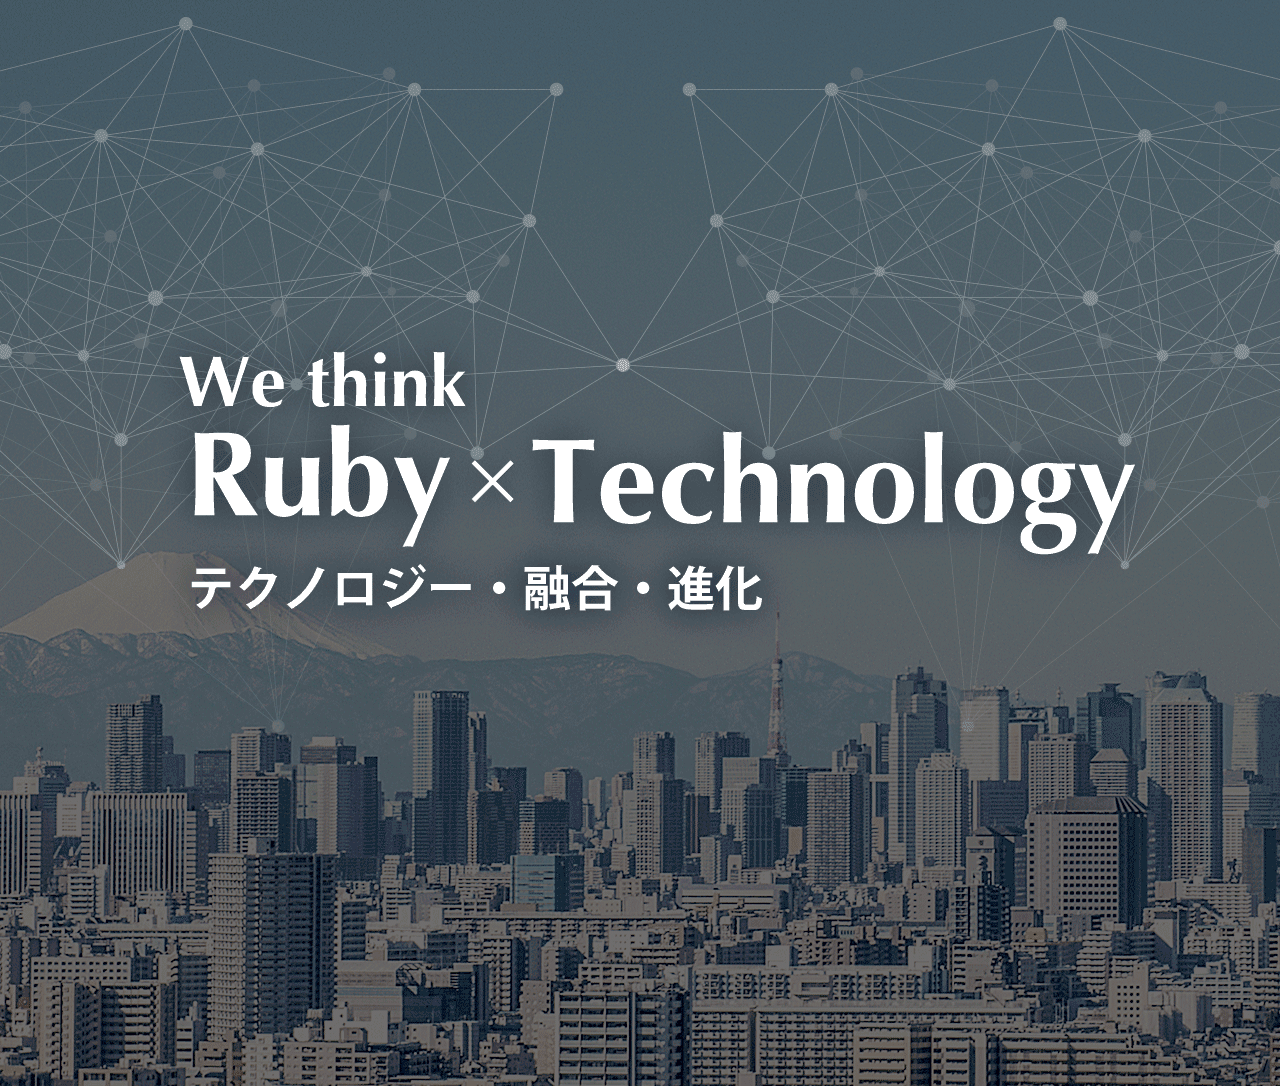 We think Ruby + a Rubyに力を。世界に輝きを。